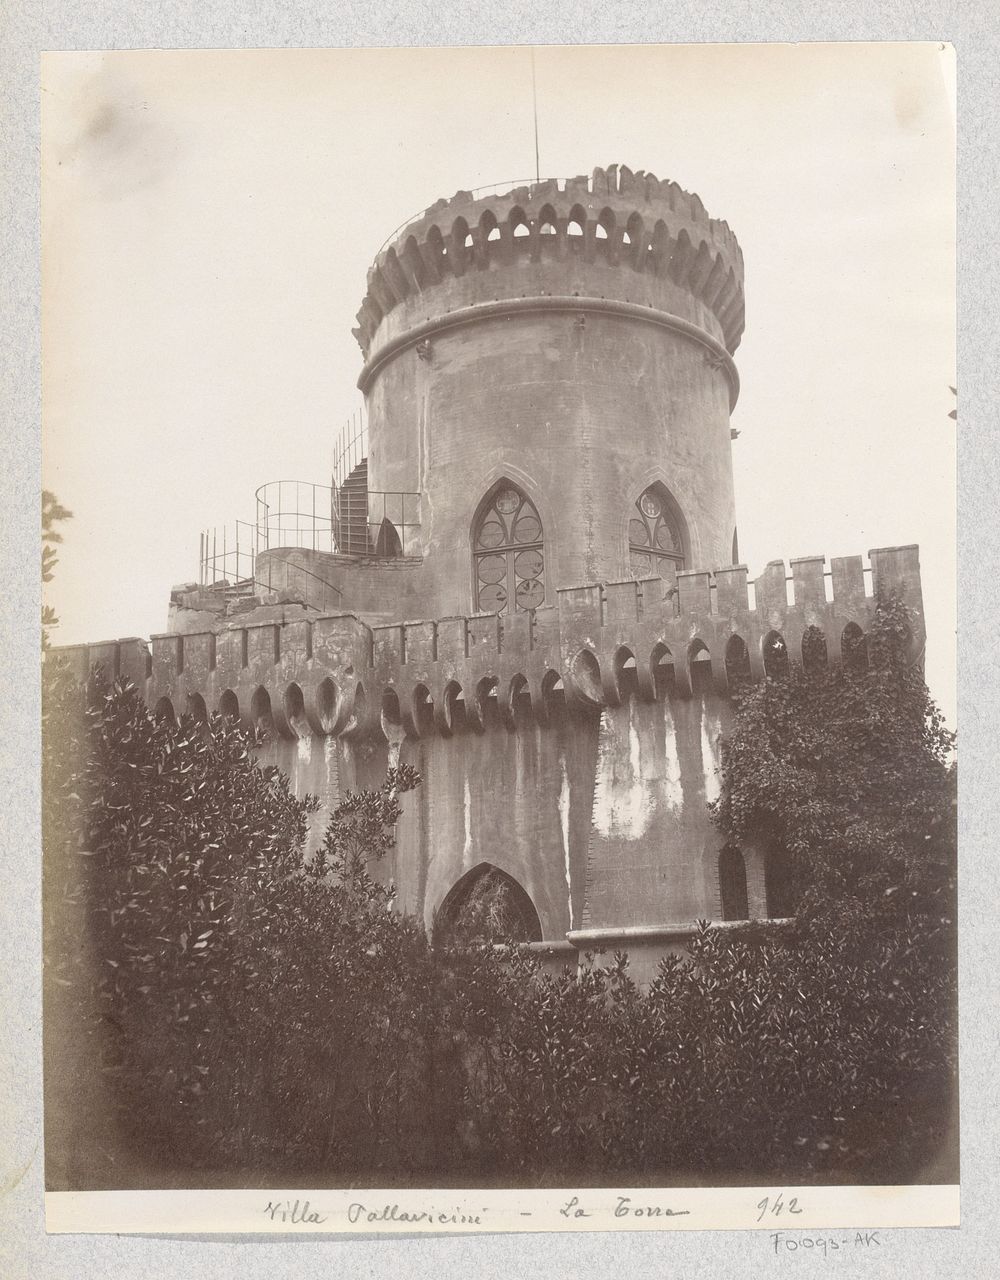 Toren in de tuin van Villa Pallavicini in Pegli (c. 1870 - c. 1890) by Celestino Degoix